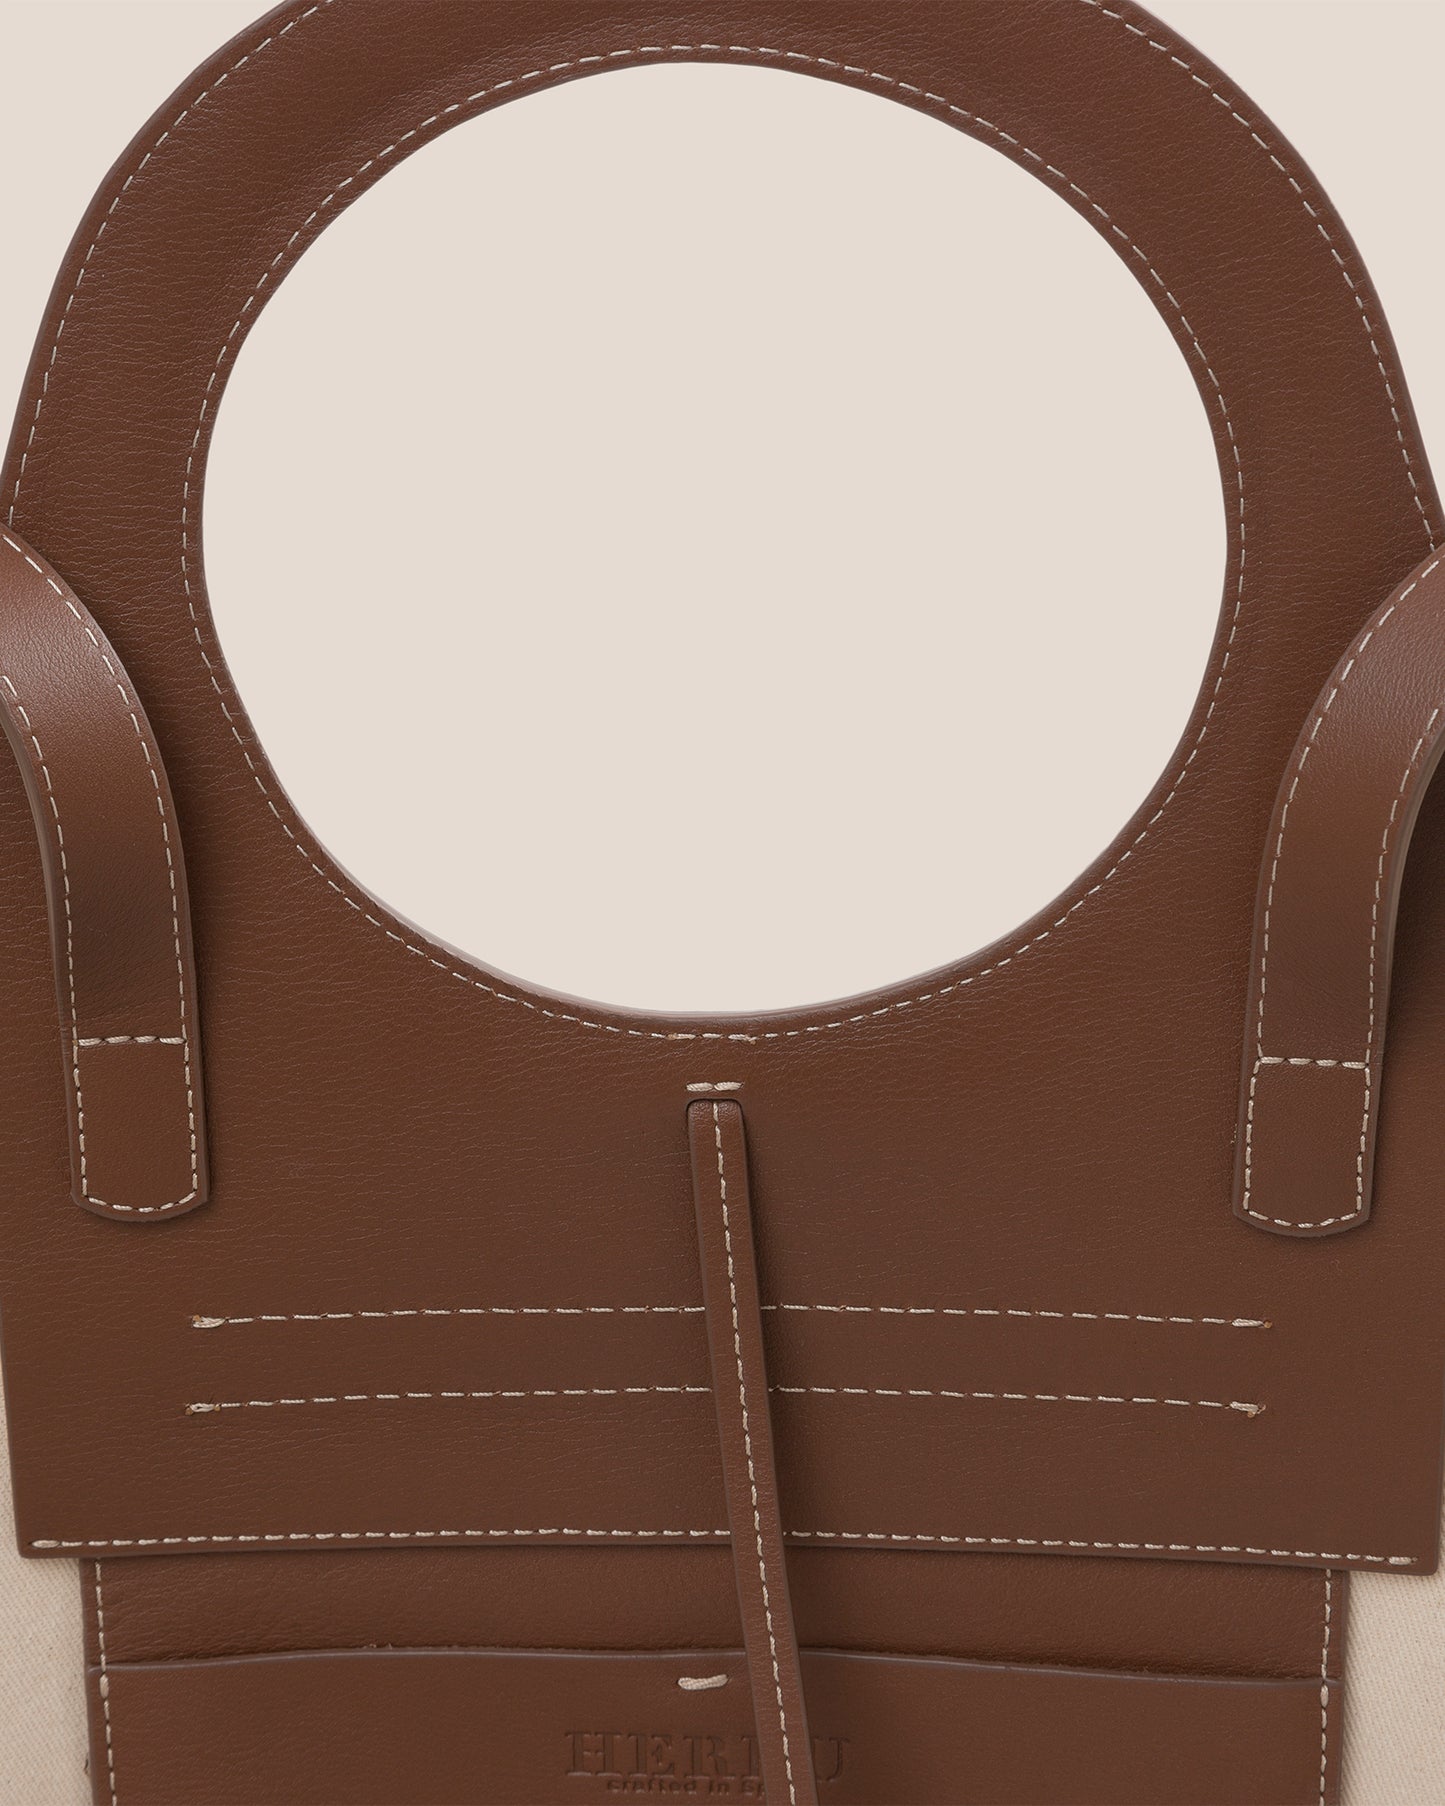 헤레우(Hereu) Coloma small woven leather tote - 캐치패션